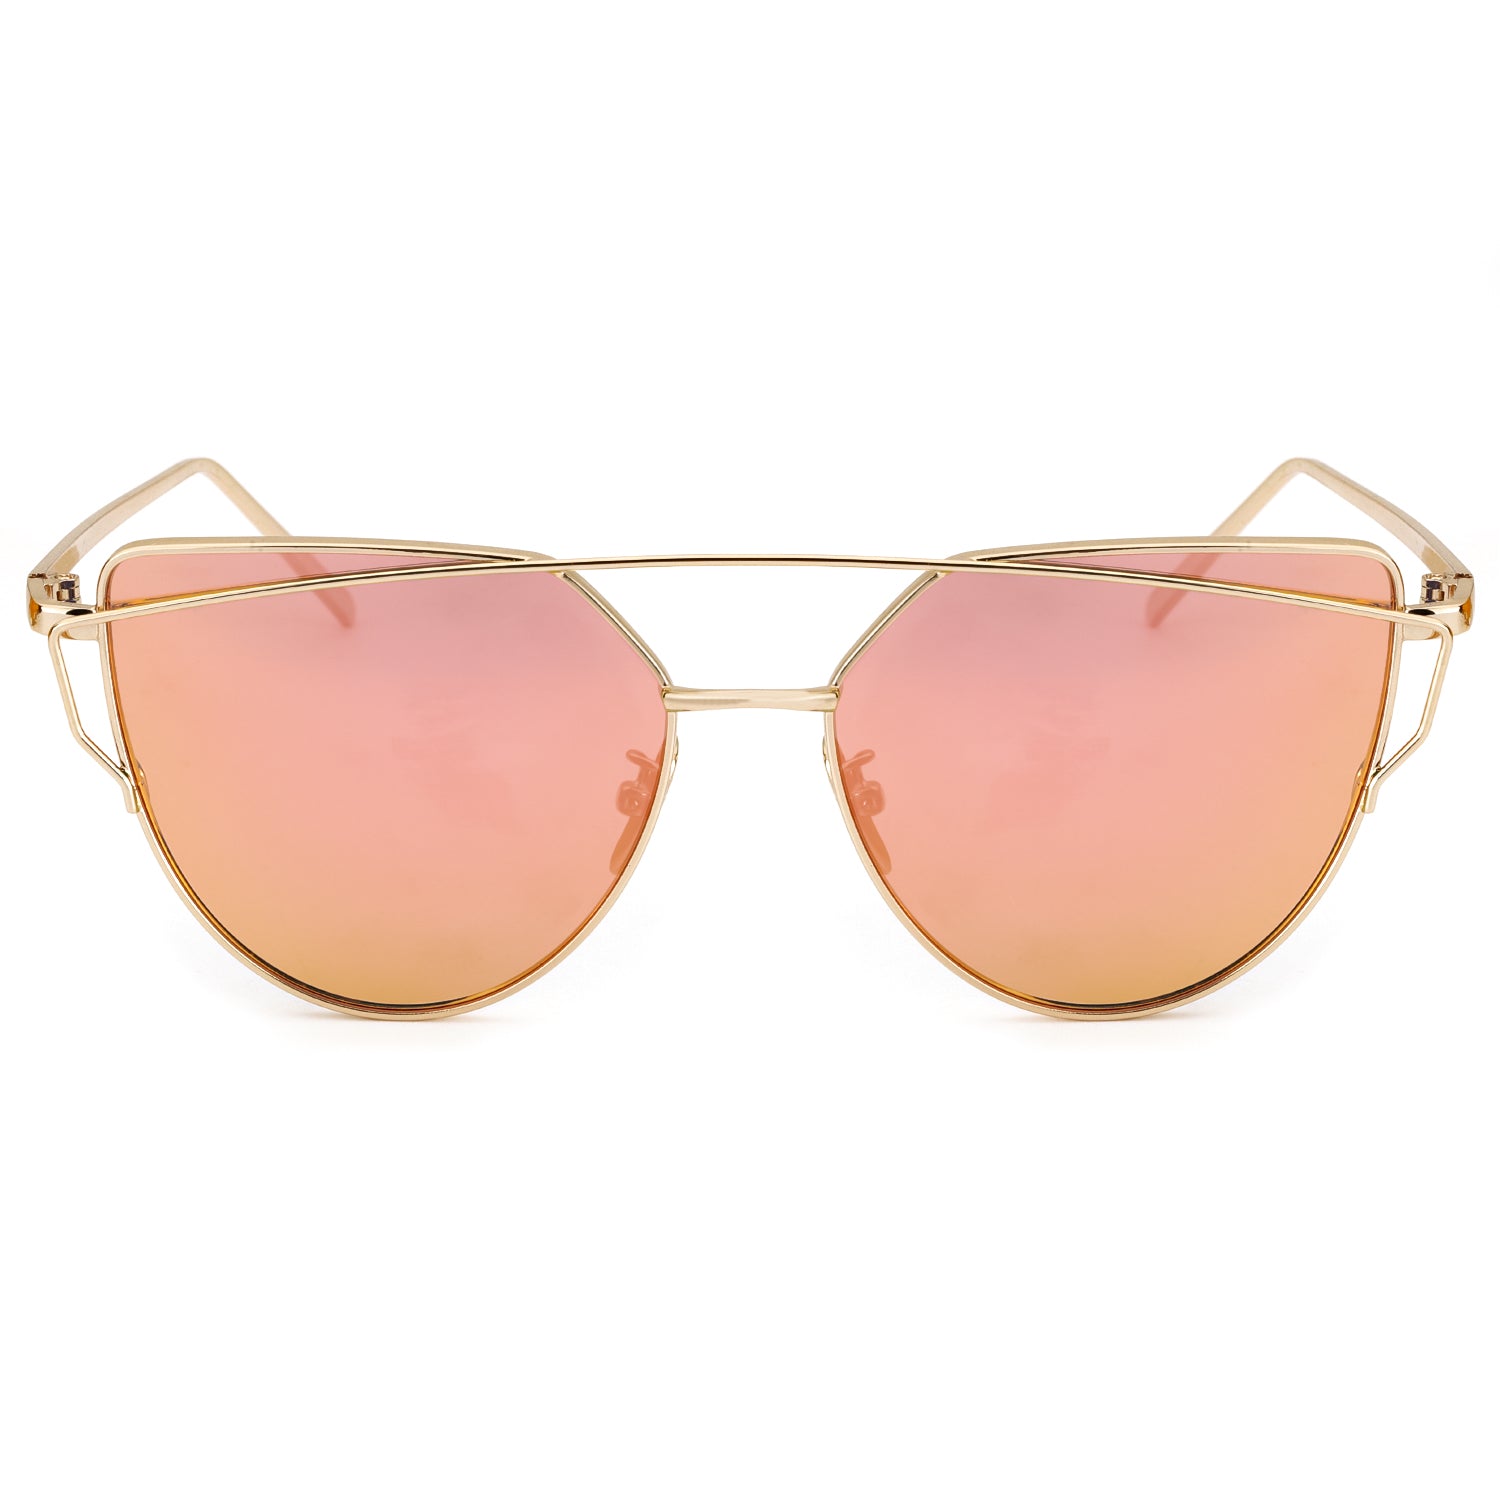 LVIOE Cat Eye Sunglasses for Women Mirrored Lenses - LVIOE